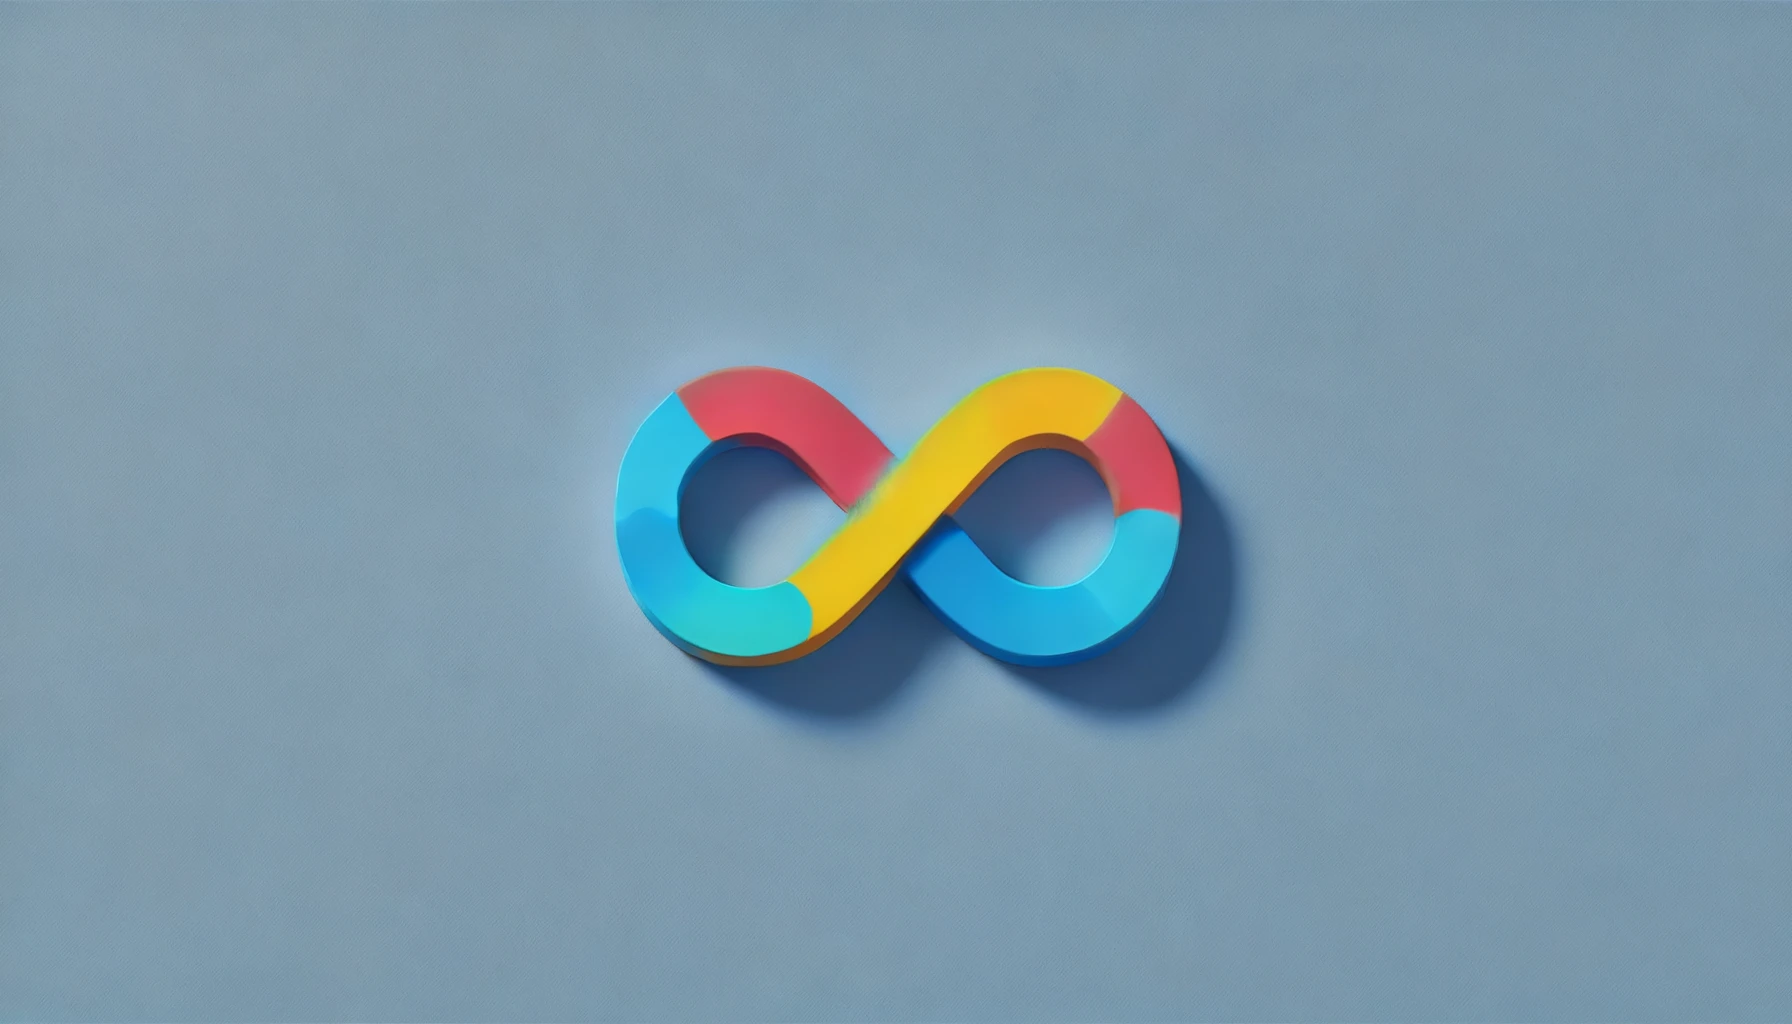 L'immagine descrive il nuovo simbolo per l'autismo:L'arcobaleno rappresenta l'orgoglio e l'infinito rappresenta la diversità e le infinite possibilità.